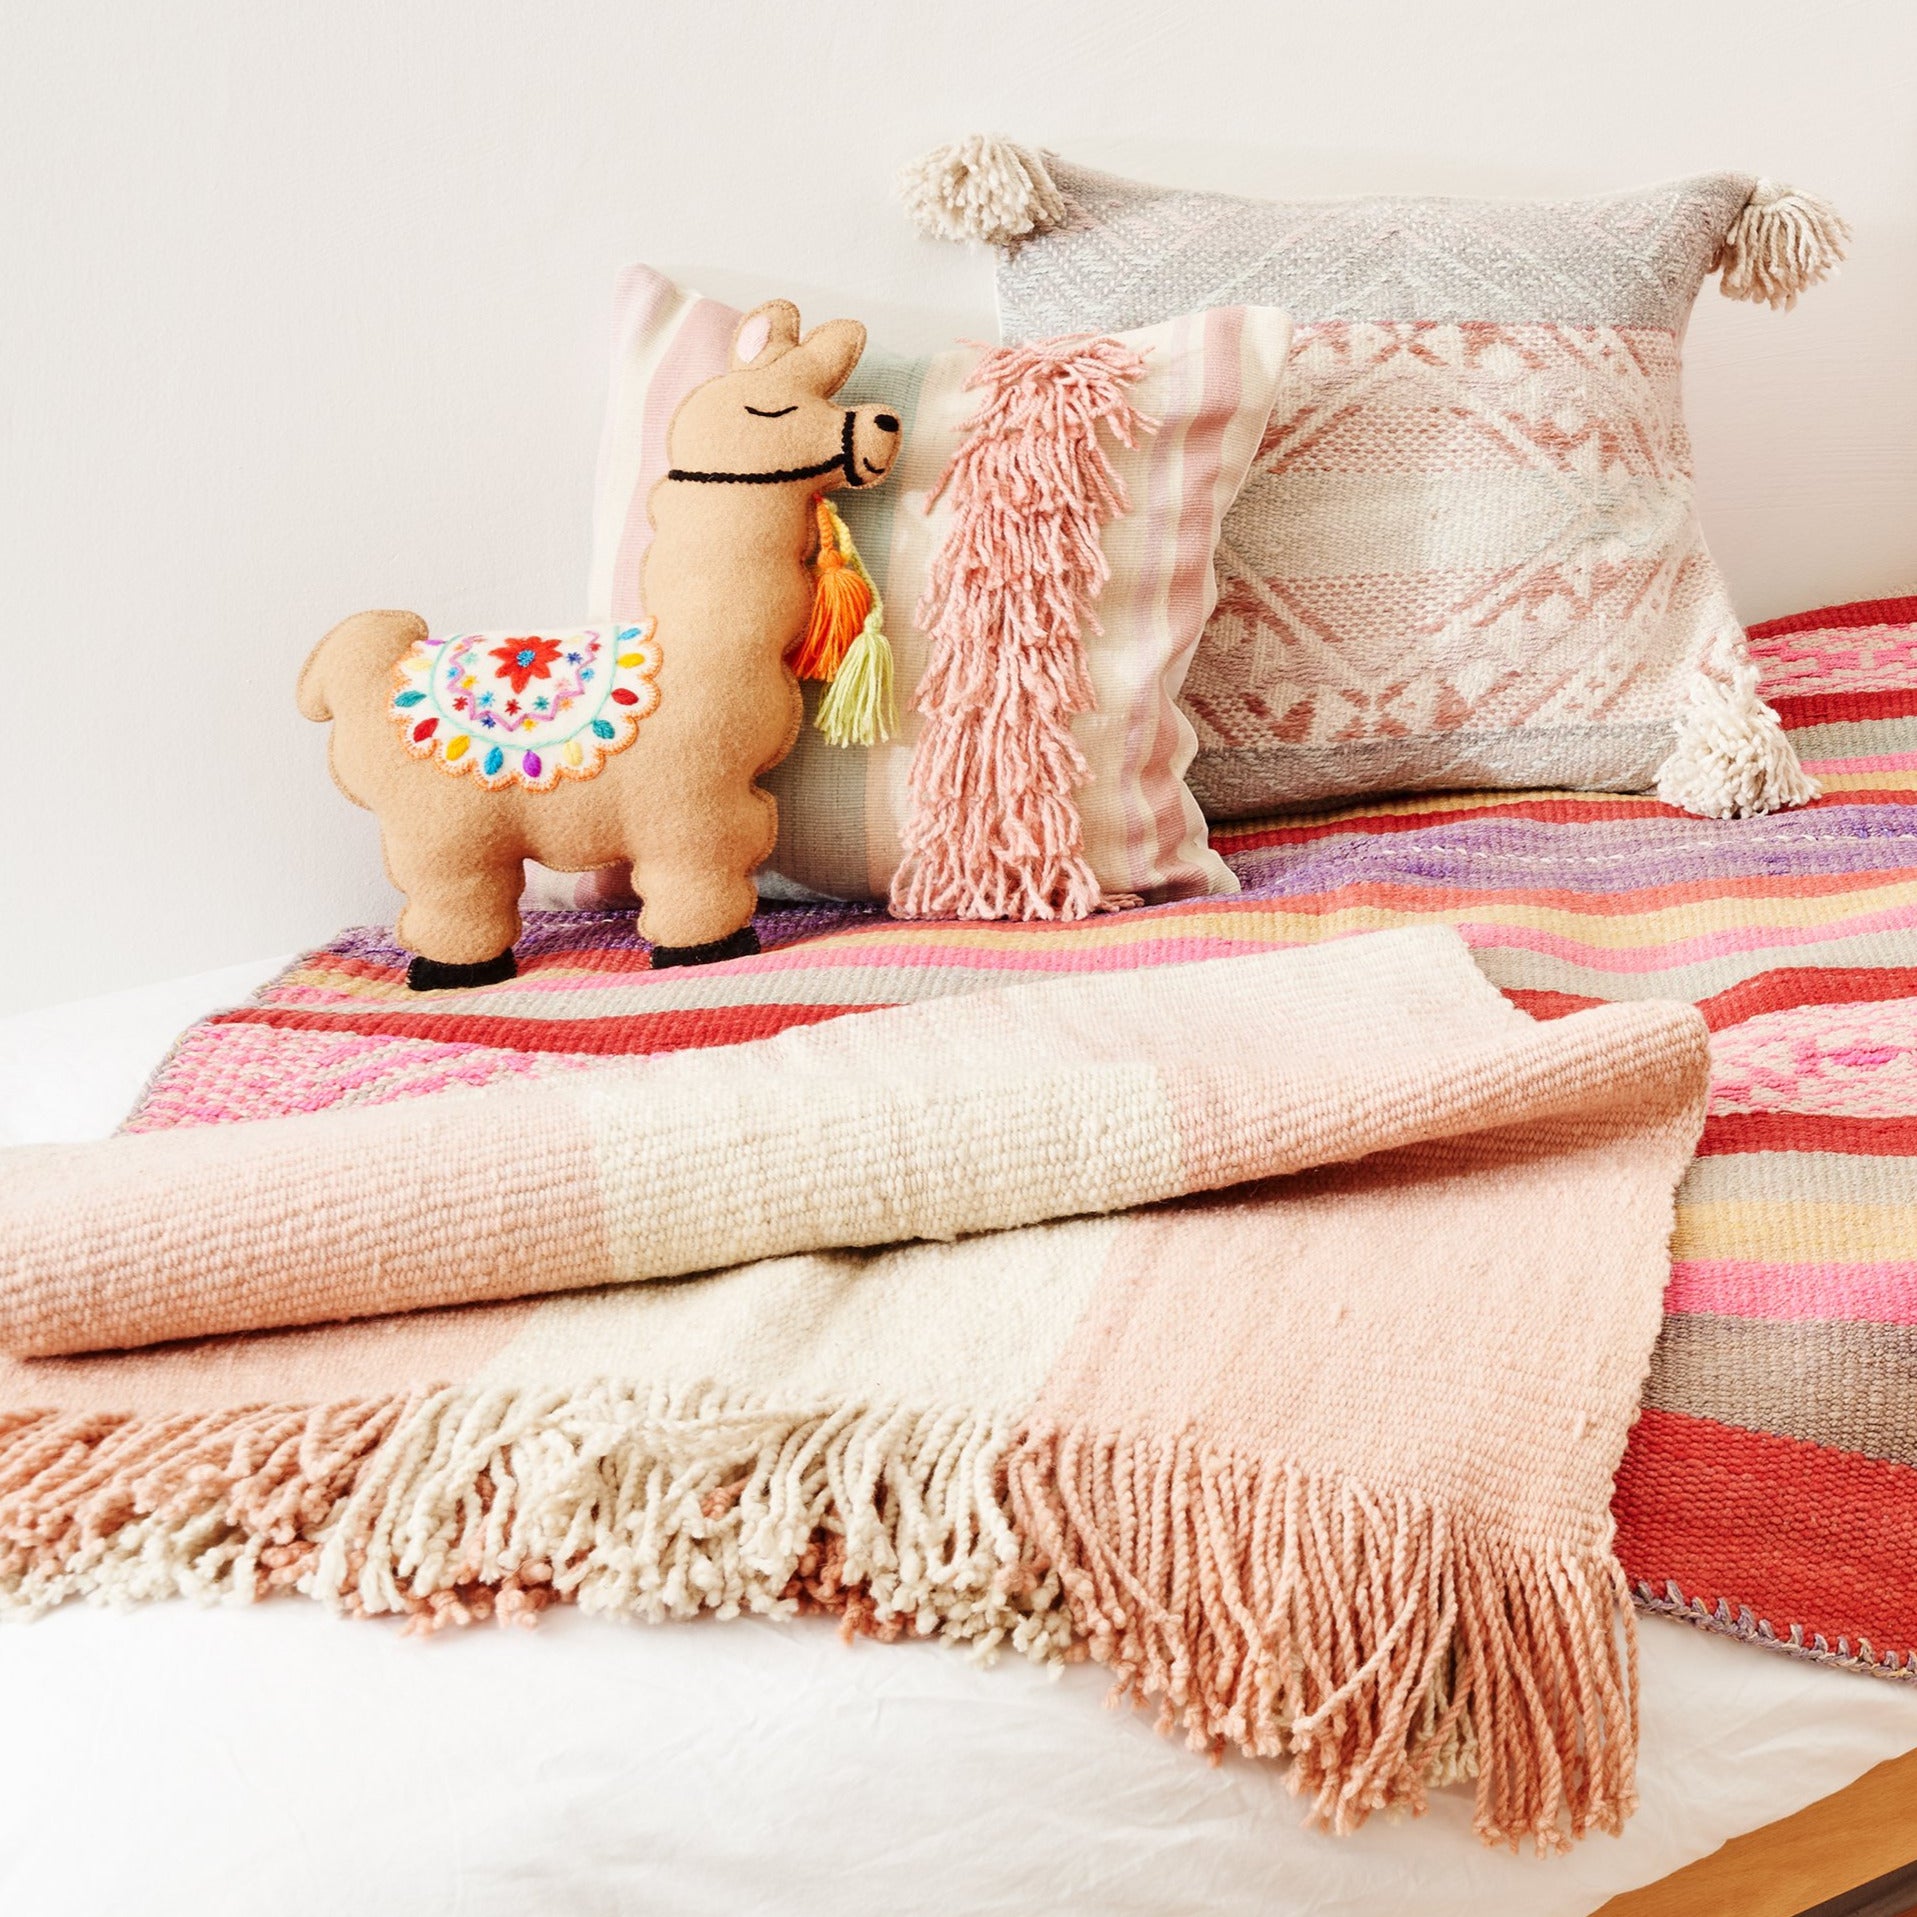 heimelige farbige Textilien in Rosa auf Kinderbett